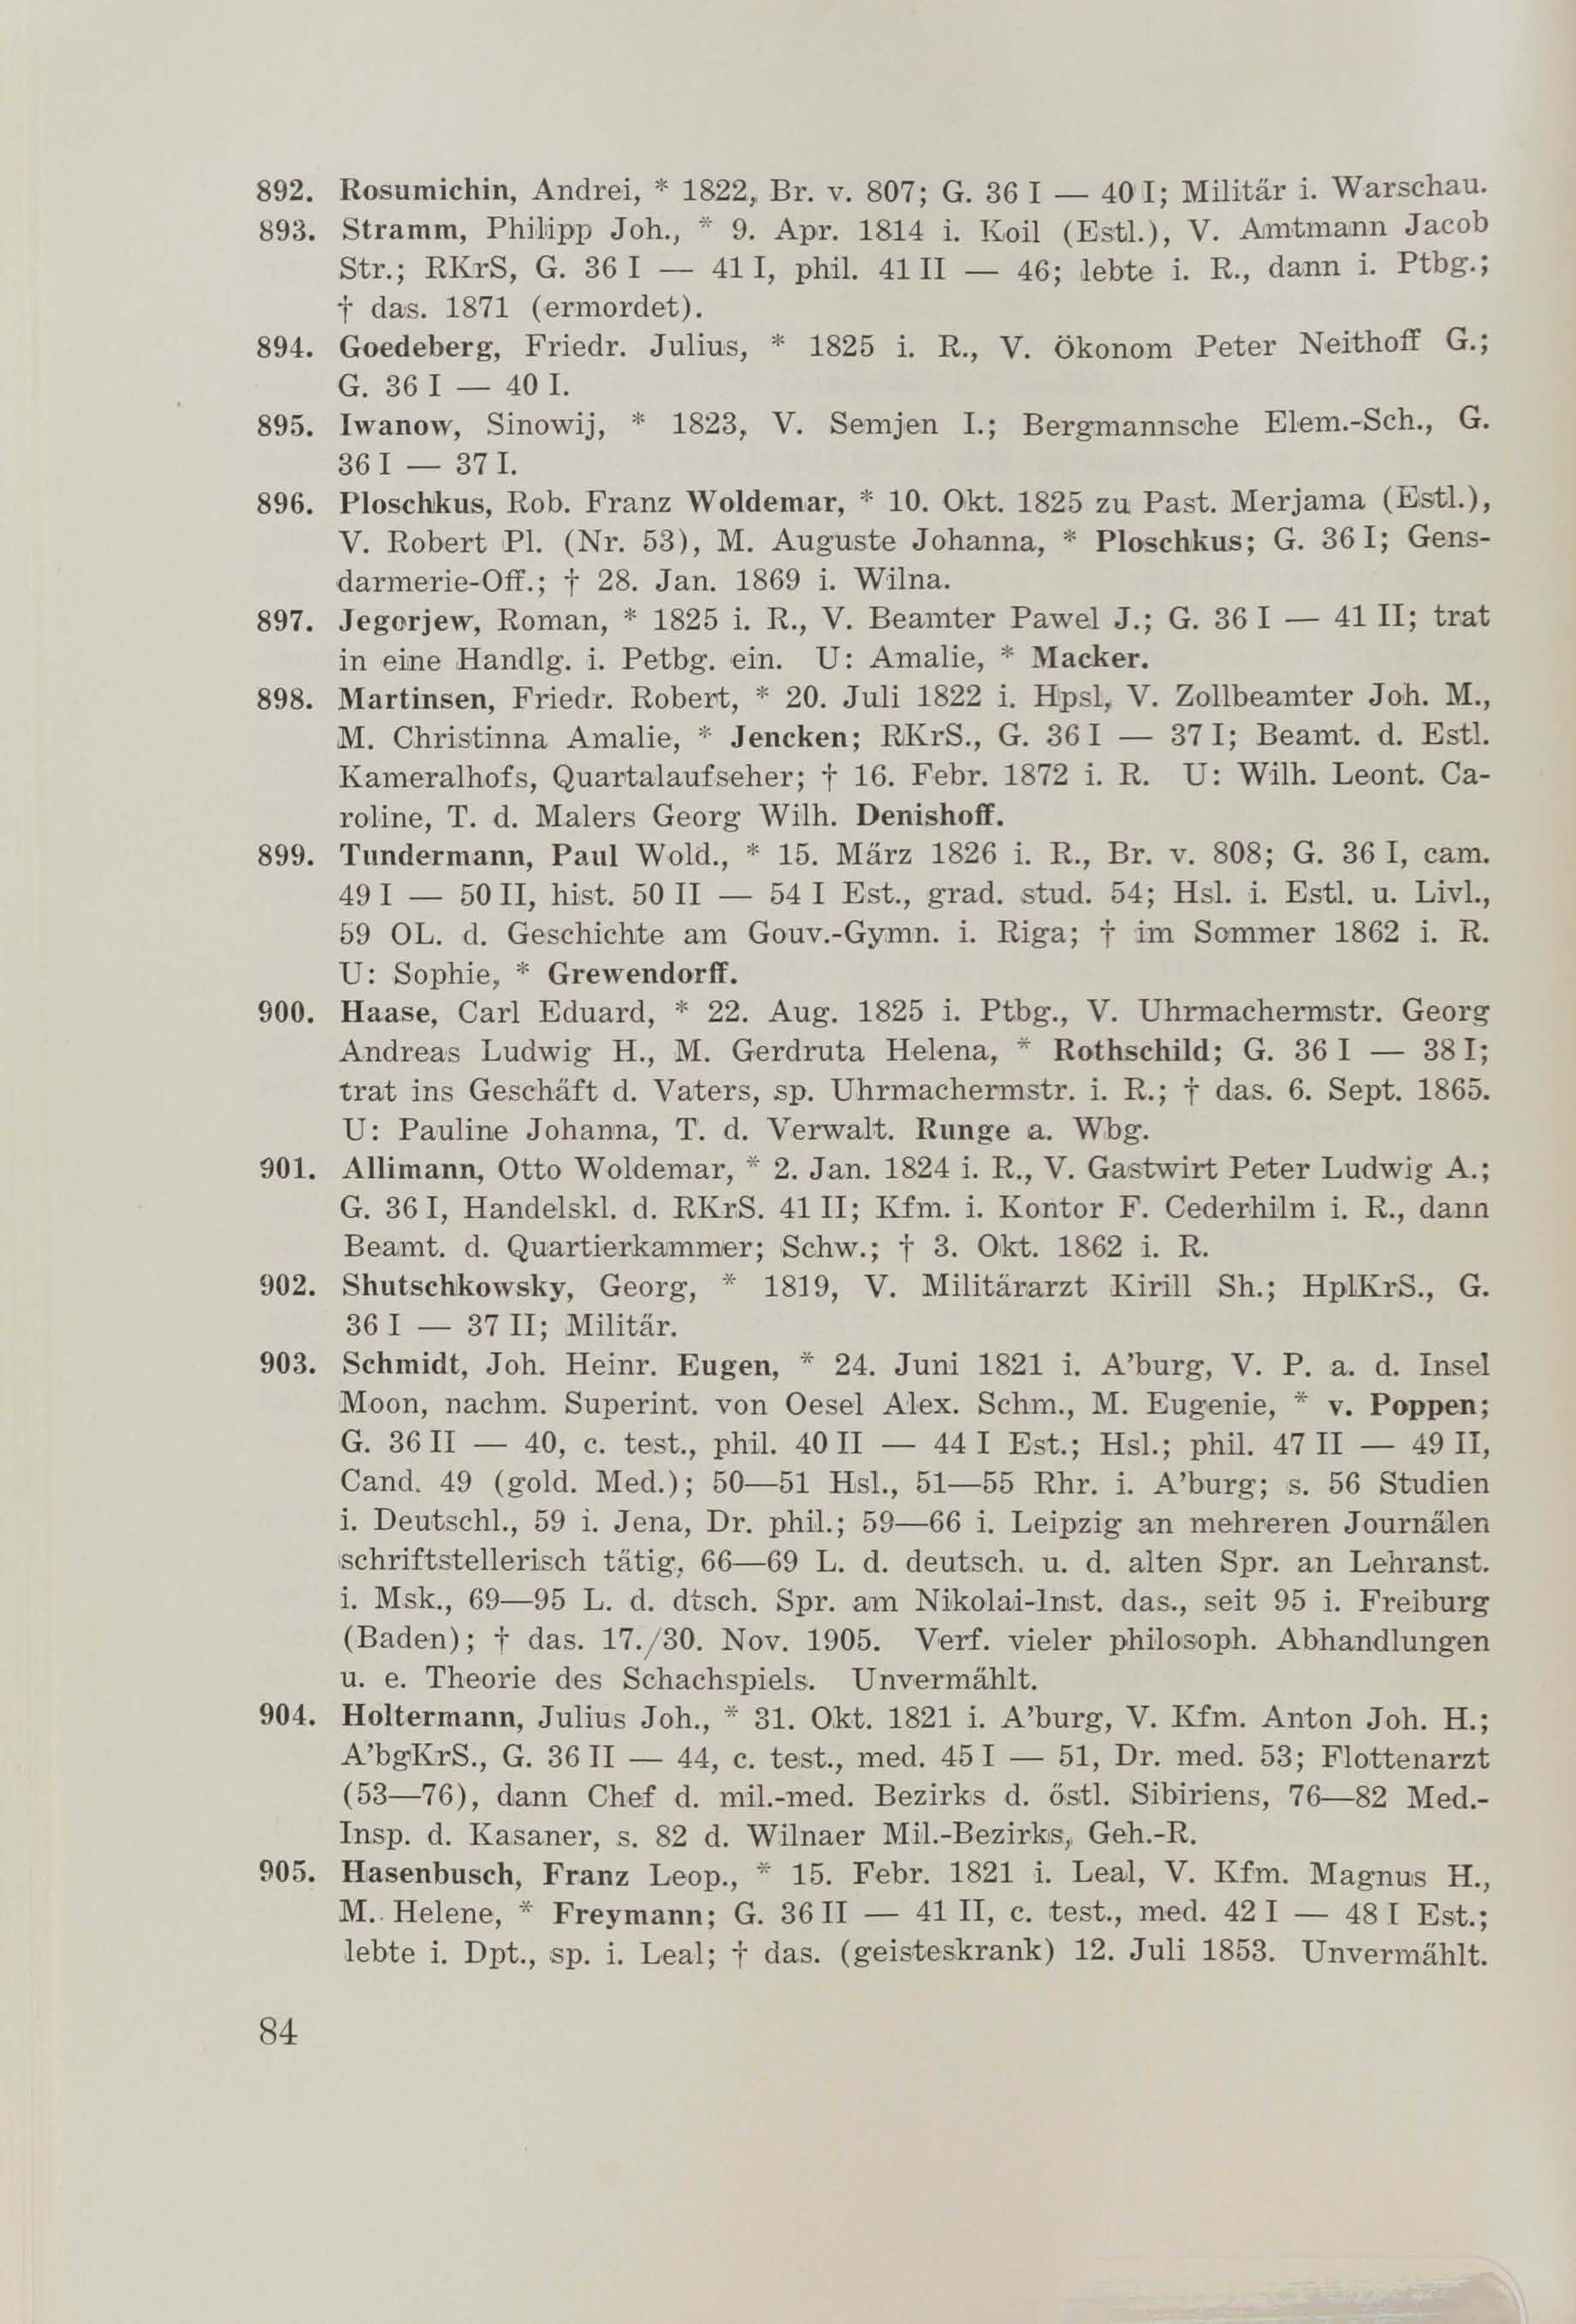 Schüler-Verzeichnis des Revalschen Gouvernements-Gymnasiums 1805–1890 (1931) | 94. (84) Main body of text